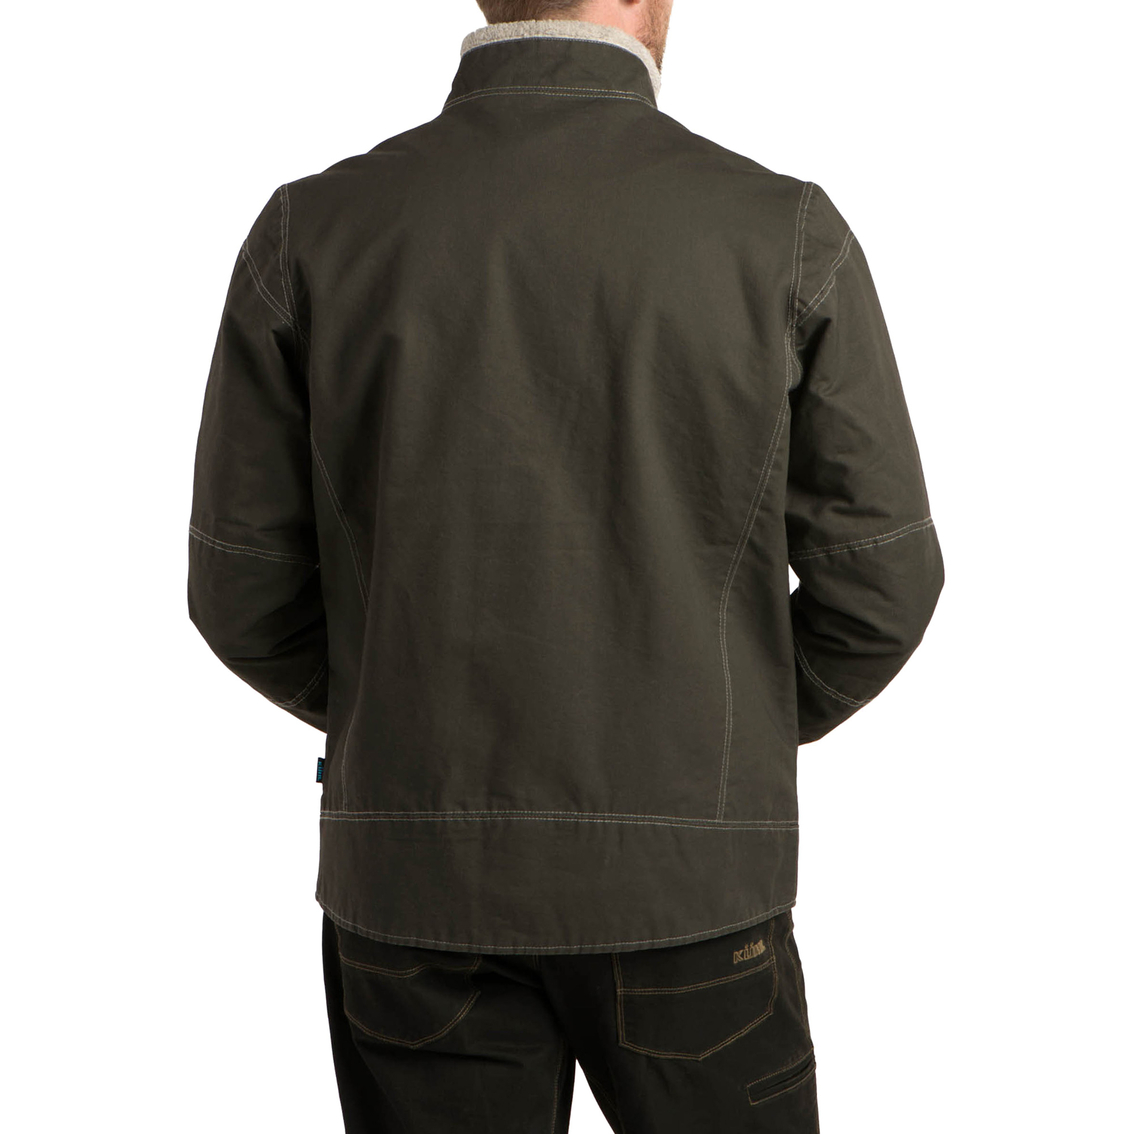 Kuhl Burr Lined Jacket - Image 2 of 6